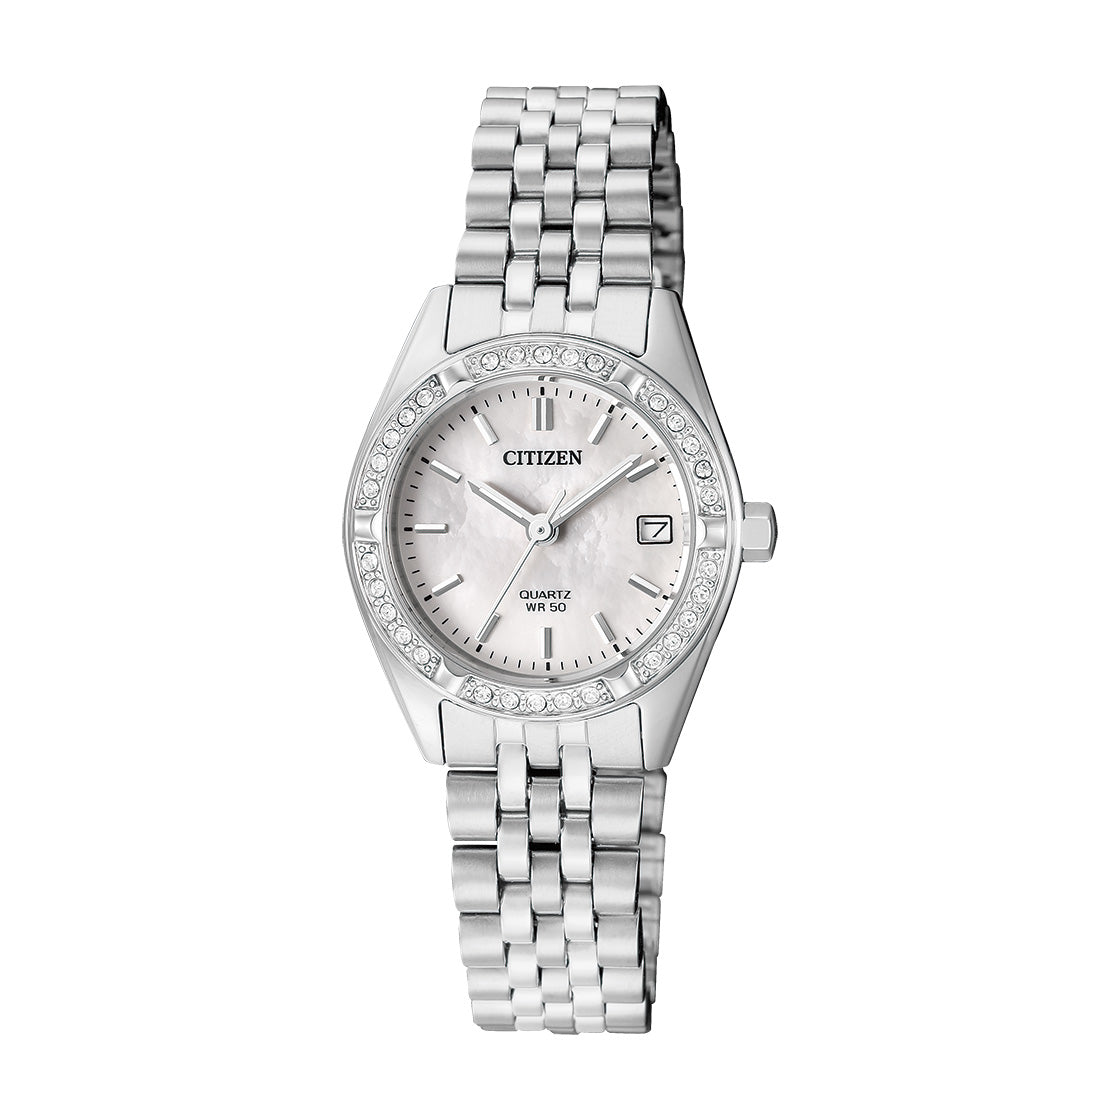 Citizen - EU6060-55D -  Quartz Stainless Steel Watch For Women